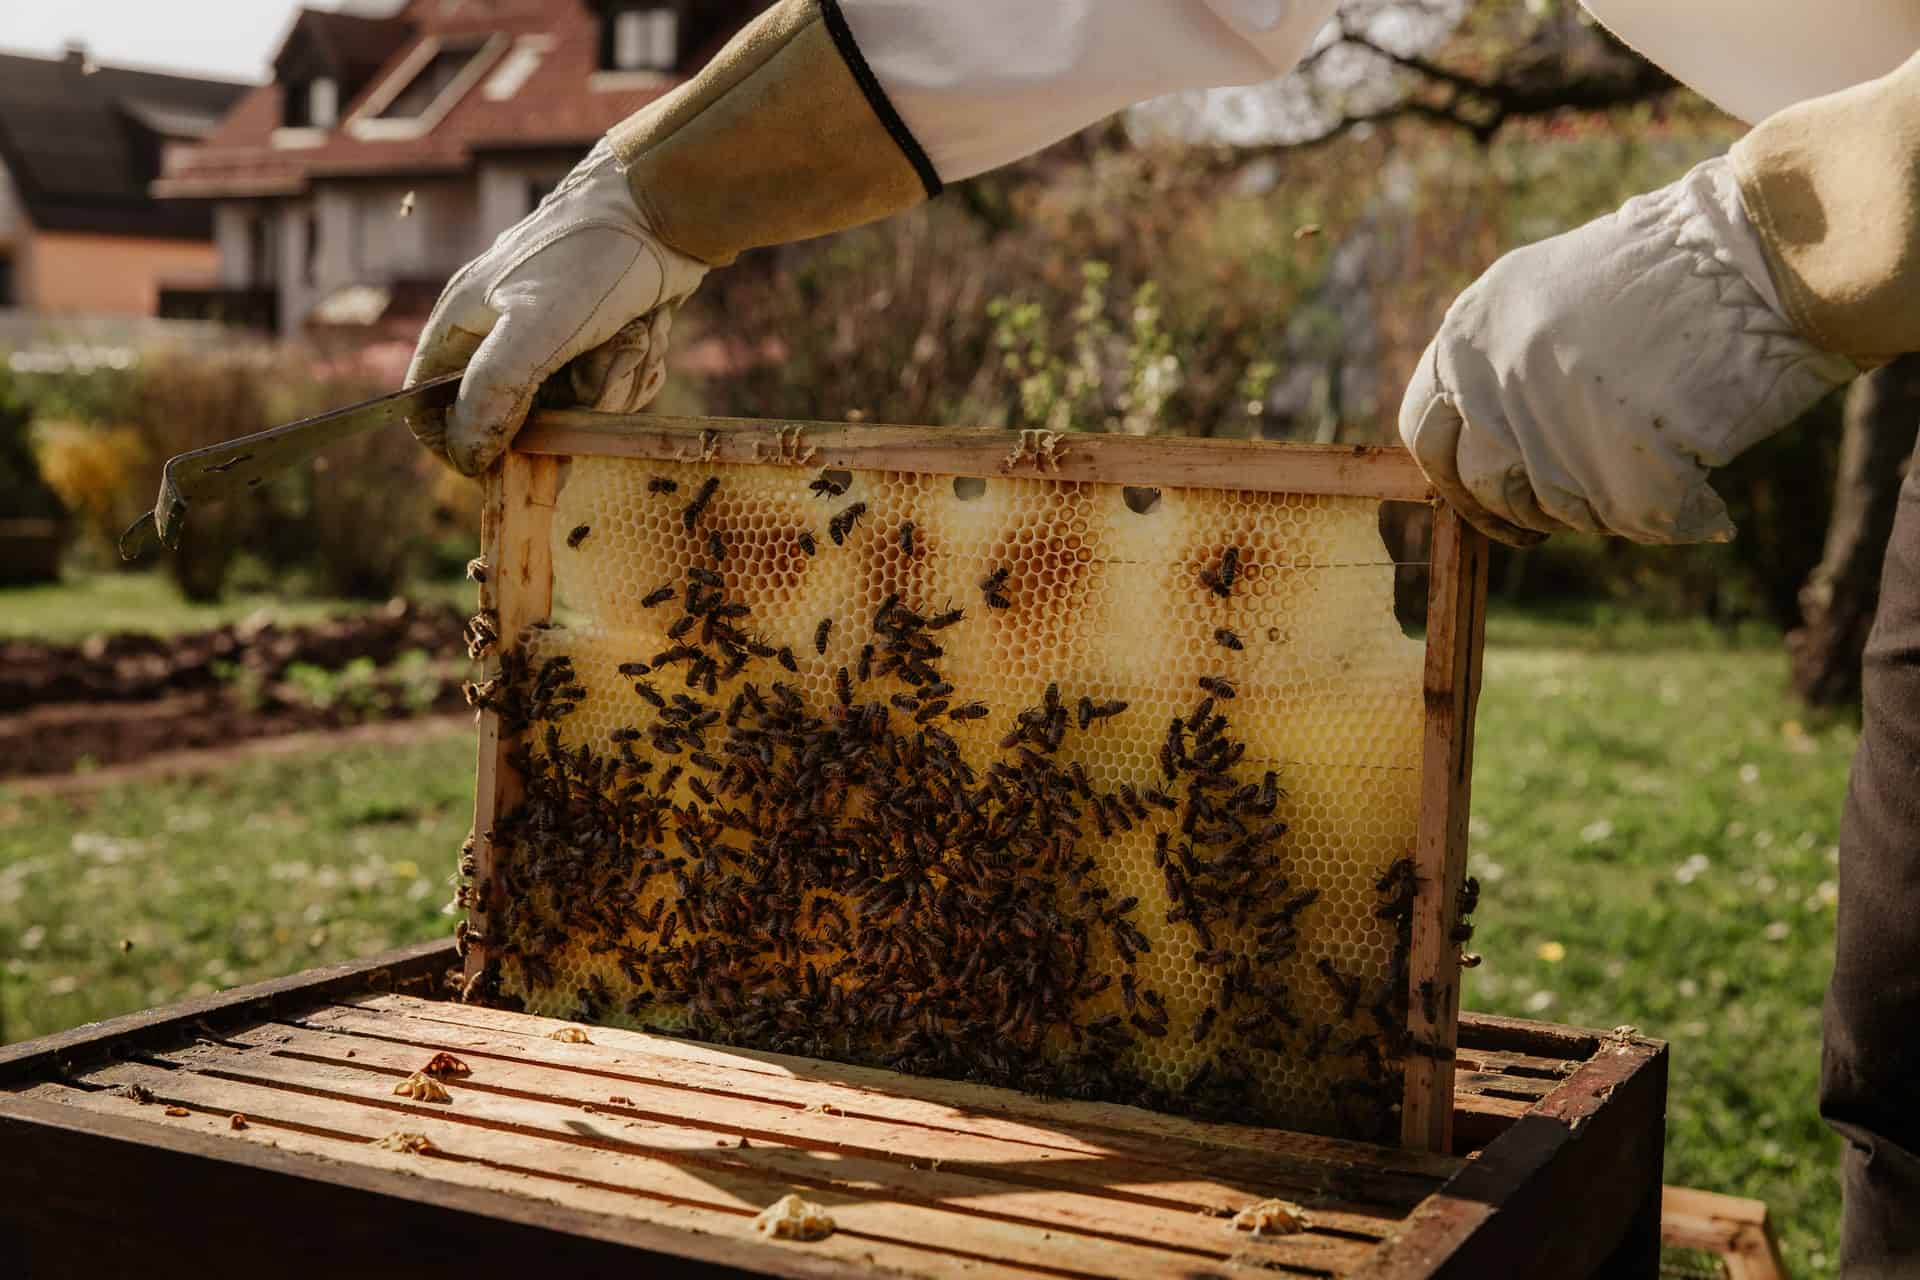 Queen Bees - A Primer